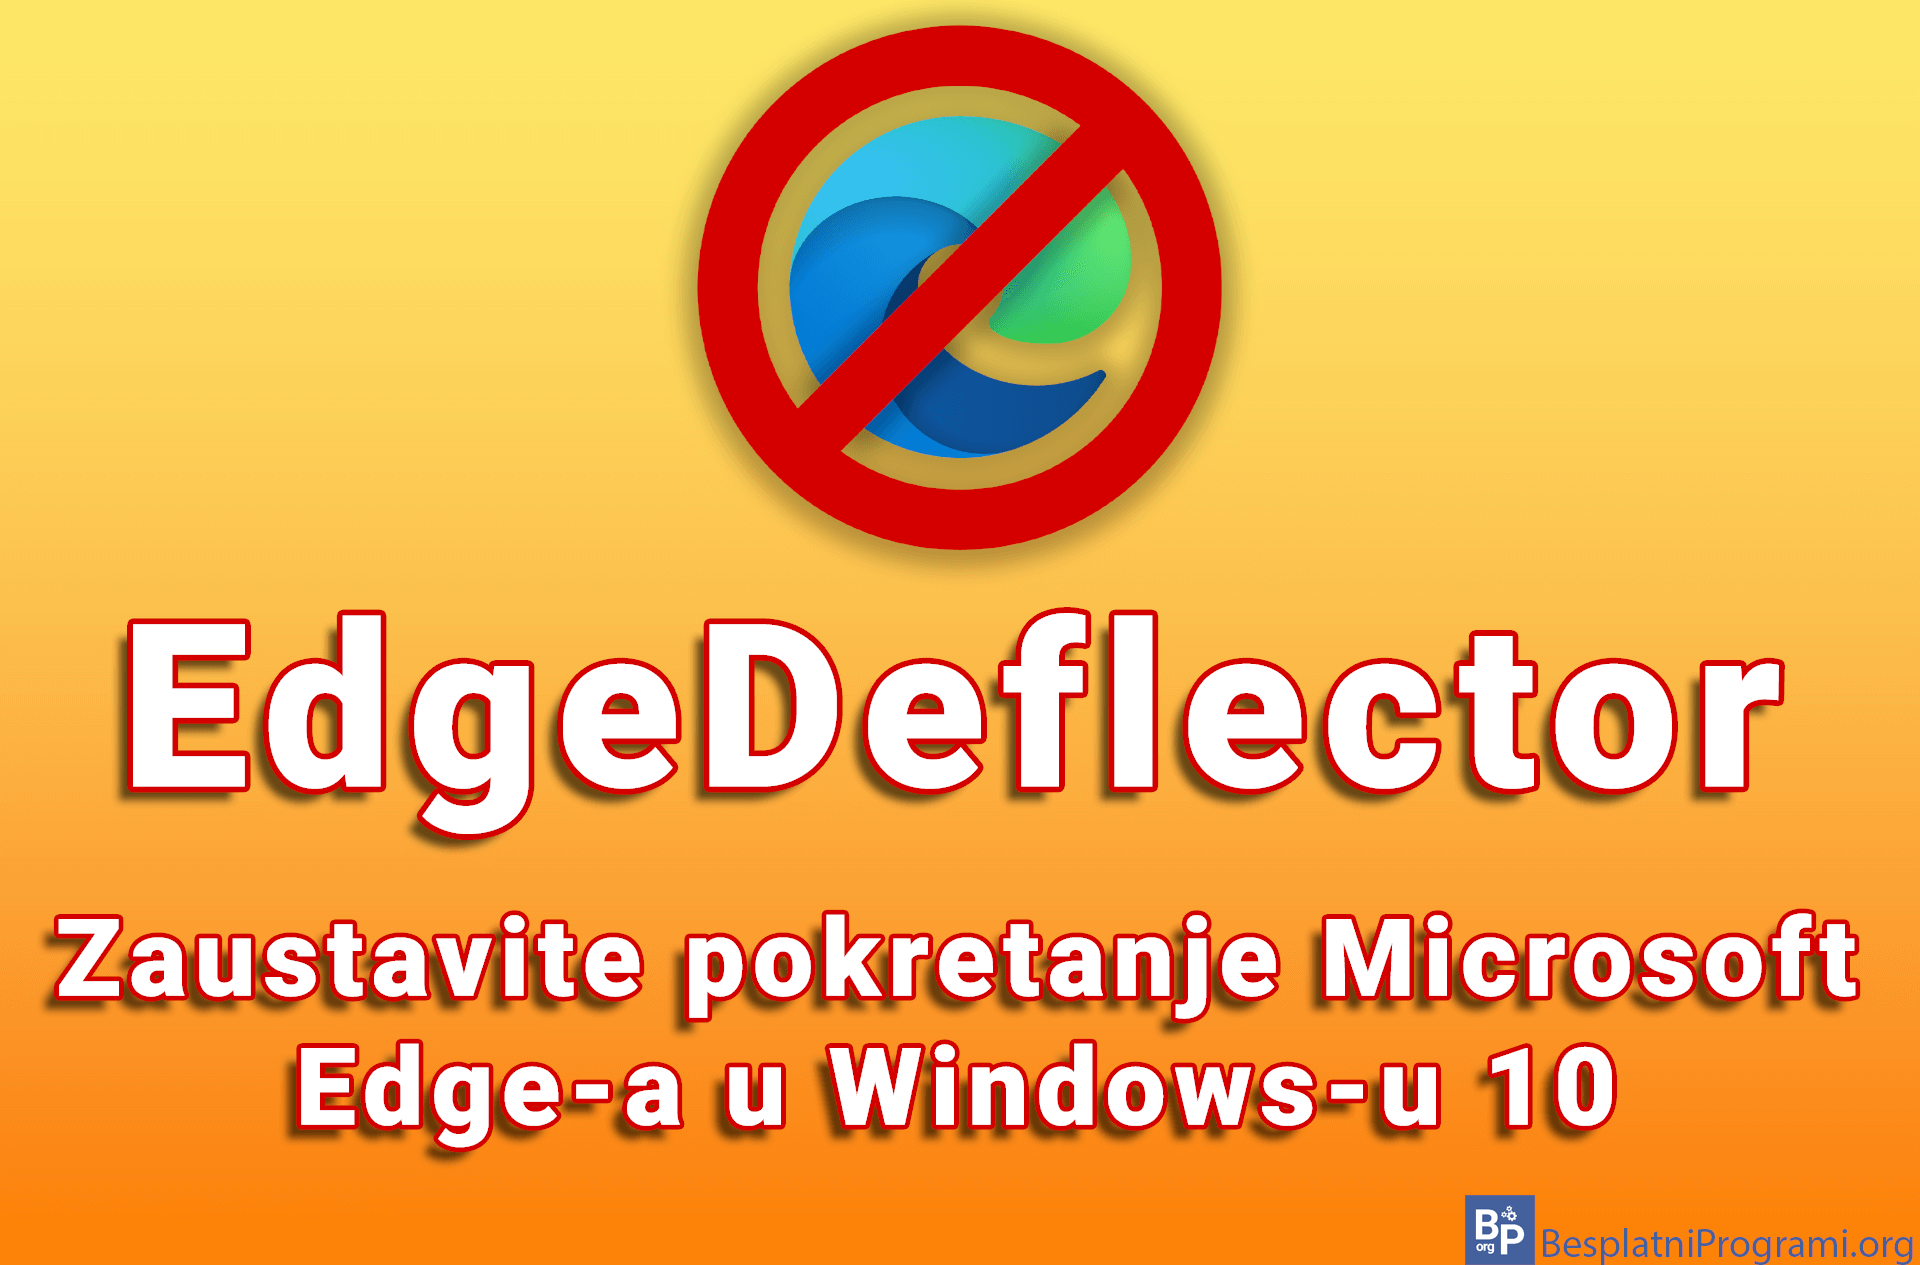 EdgeDeflector – Zaustavite pokretanje Microsoft Edge-a u Windows-u 10